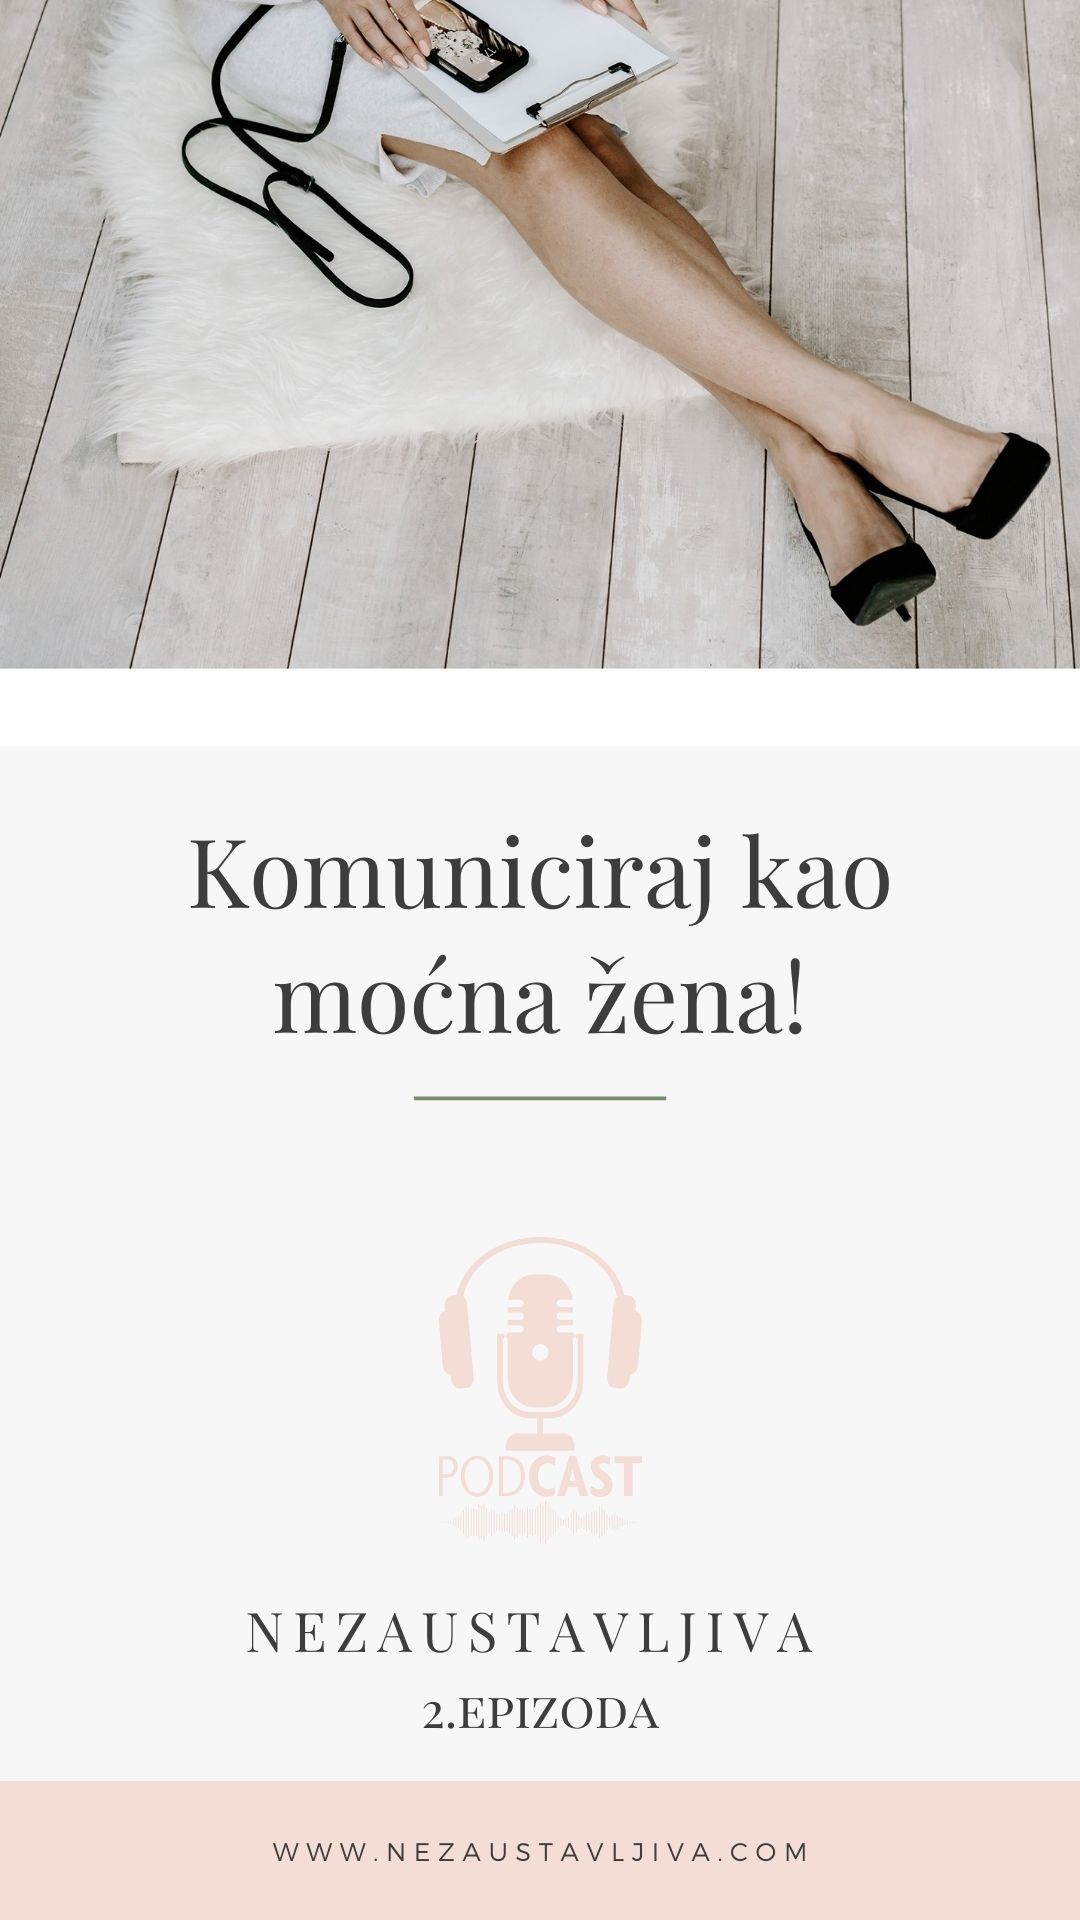 Poster na kojem piše "Komuniciraj kao mocna zena" podcast Nezaustavljiva, 2. epizoda